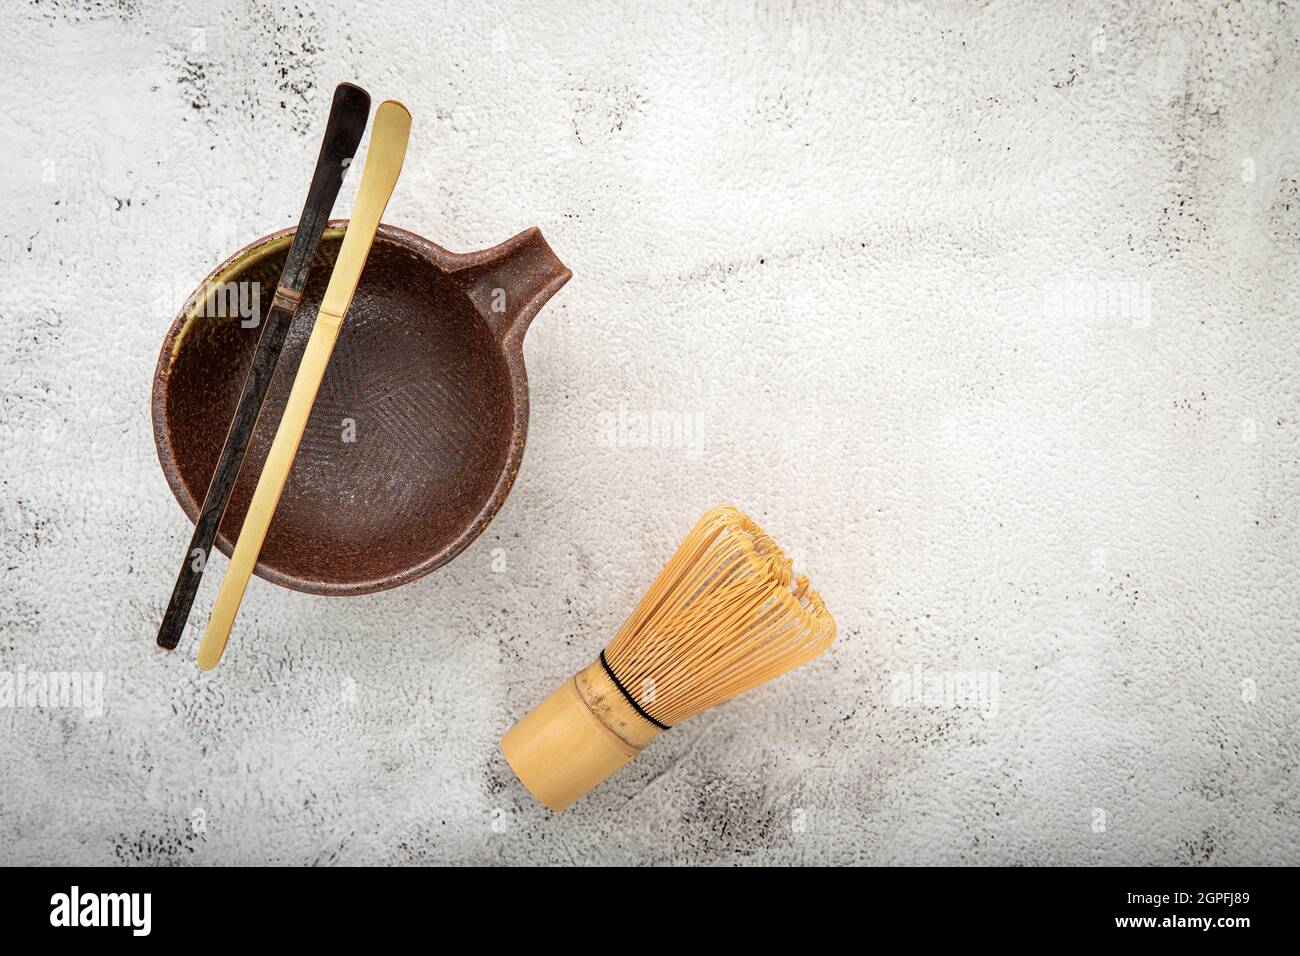 Matcha set bamboo matcha whisk and chashaku tea scoop,matcha ceramic bowl set up on white concrete background. Stock Photo